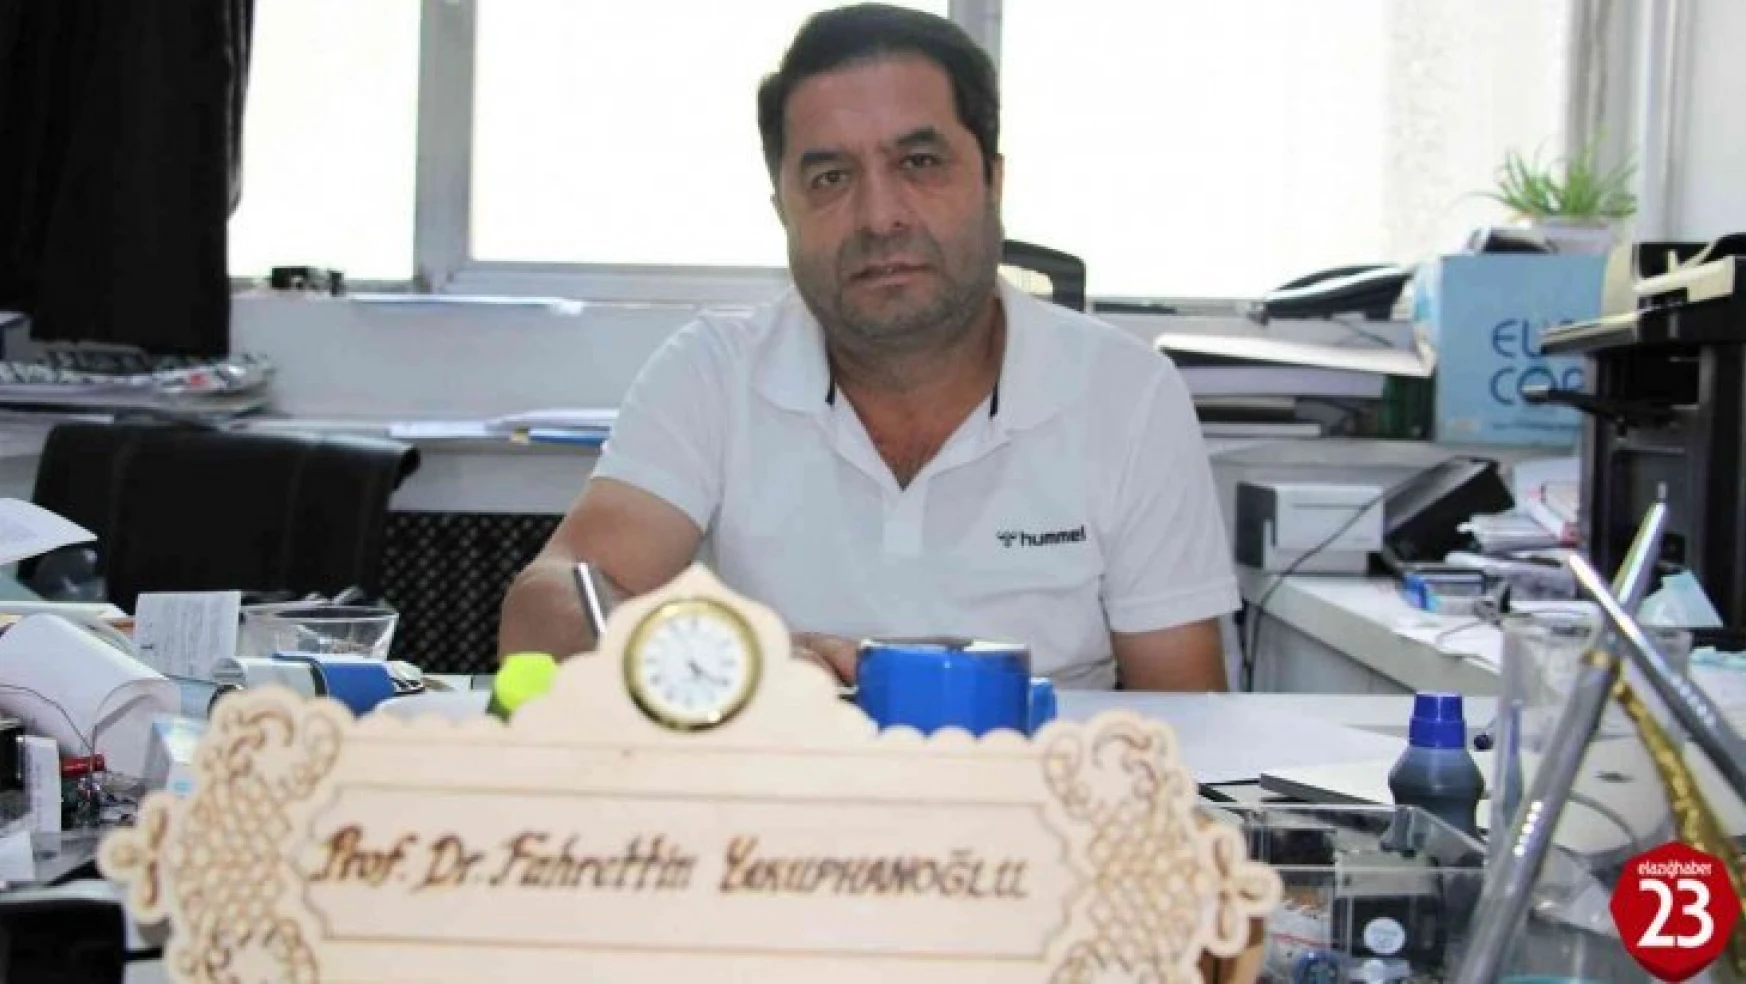 Türk profesörden önemli çalışma: Işık dalga boyu analizörü cihazı üretti